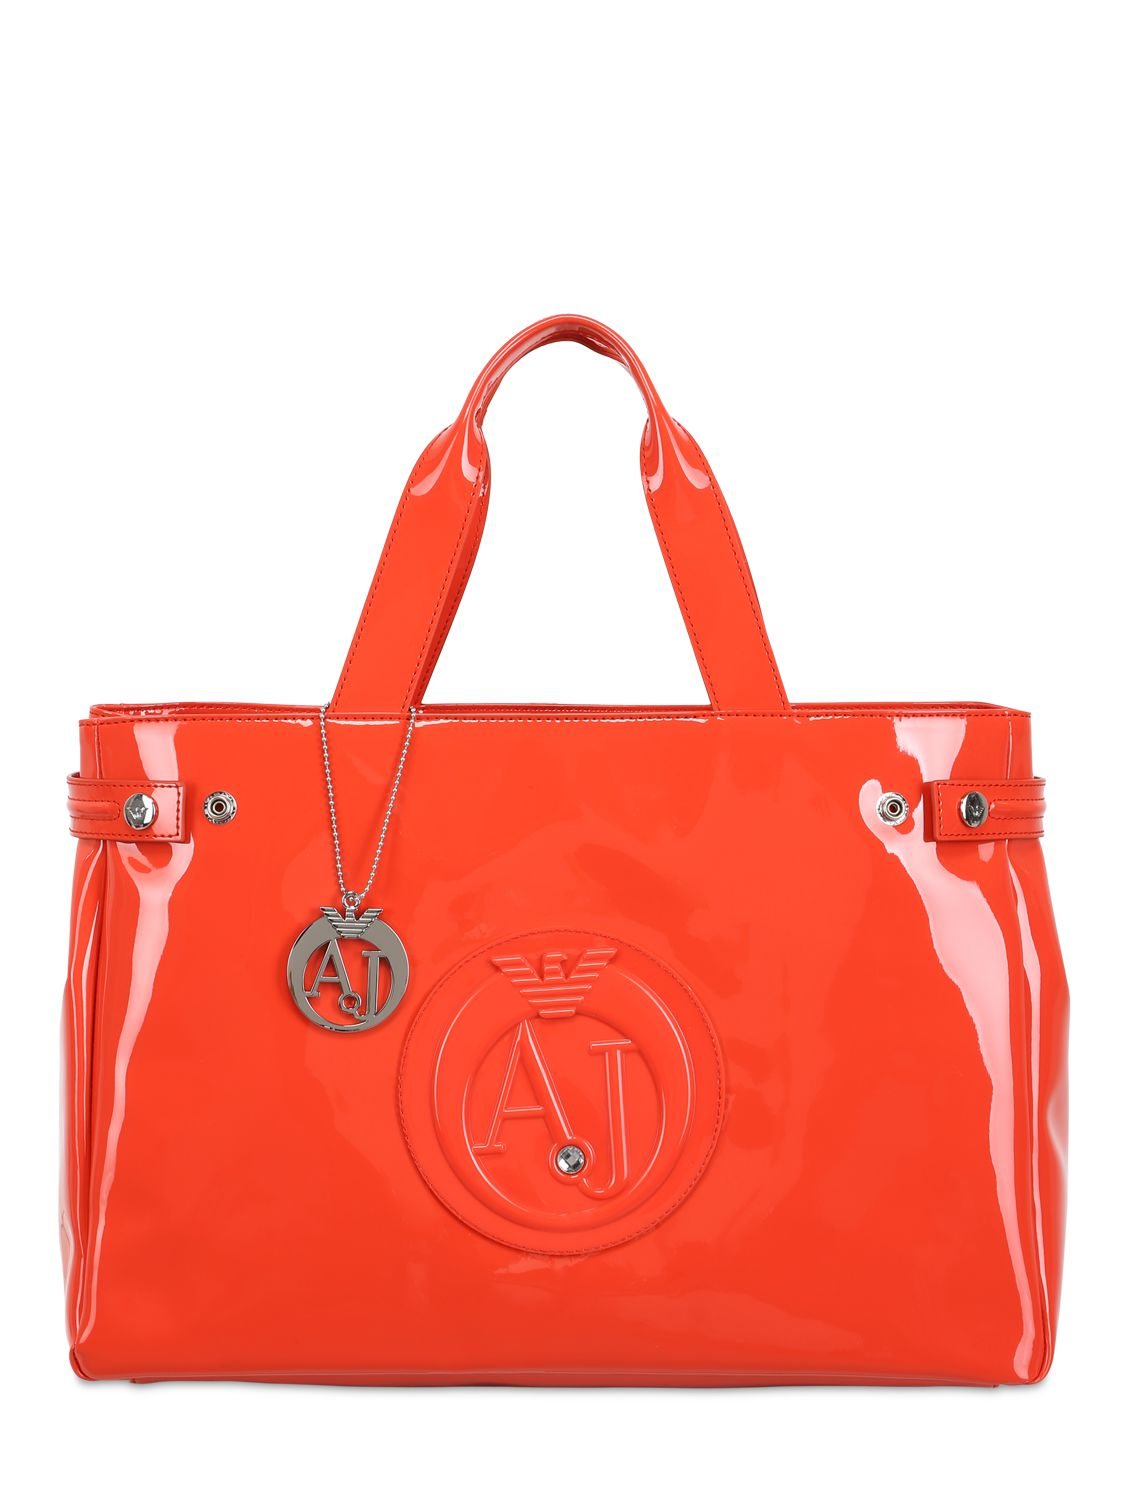 Armani Jeans Medium Embossed Logo Patent Vinyl Bag in Orange - Lyst